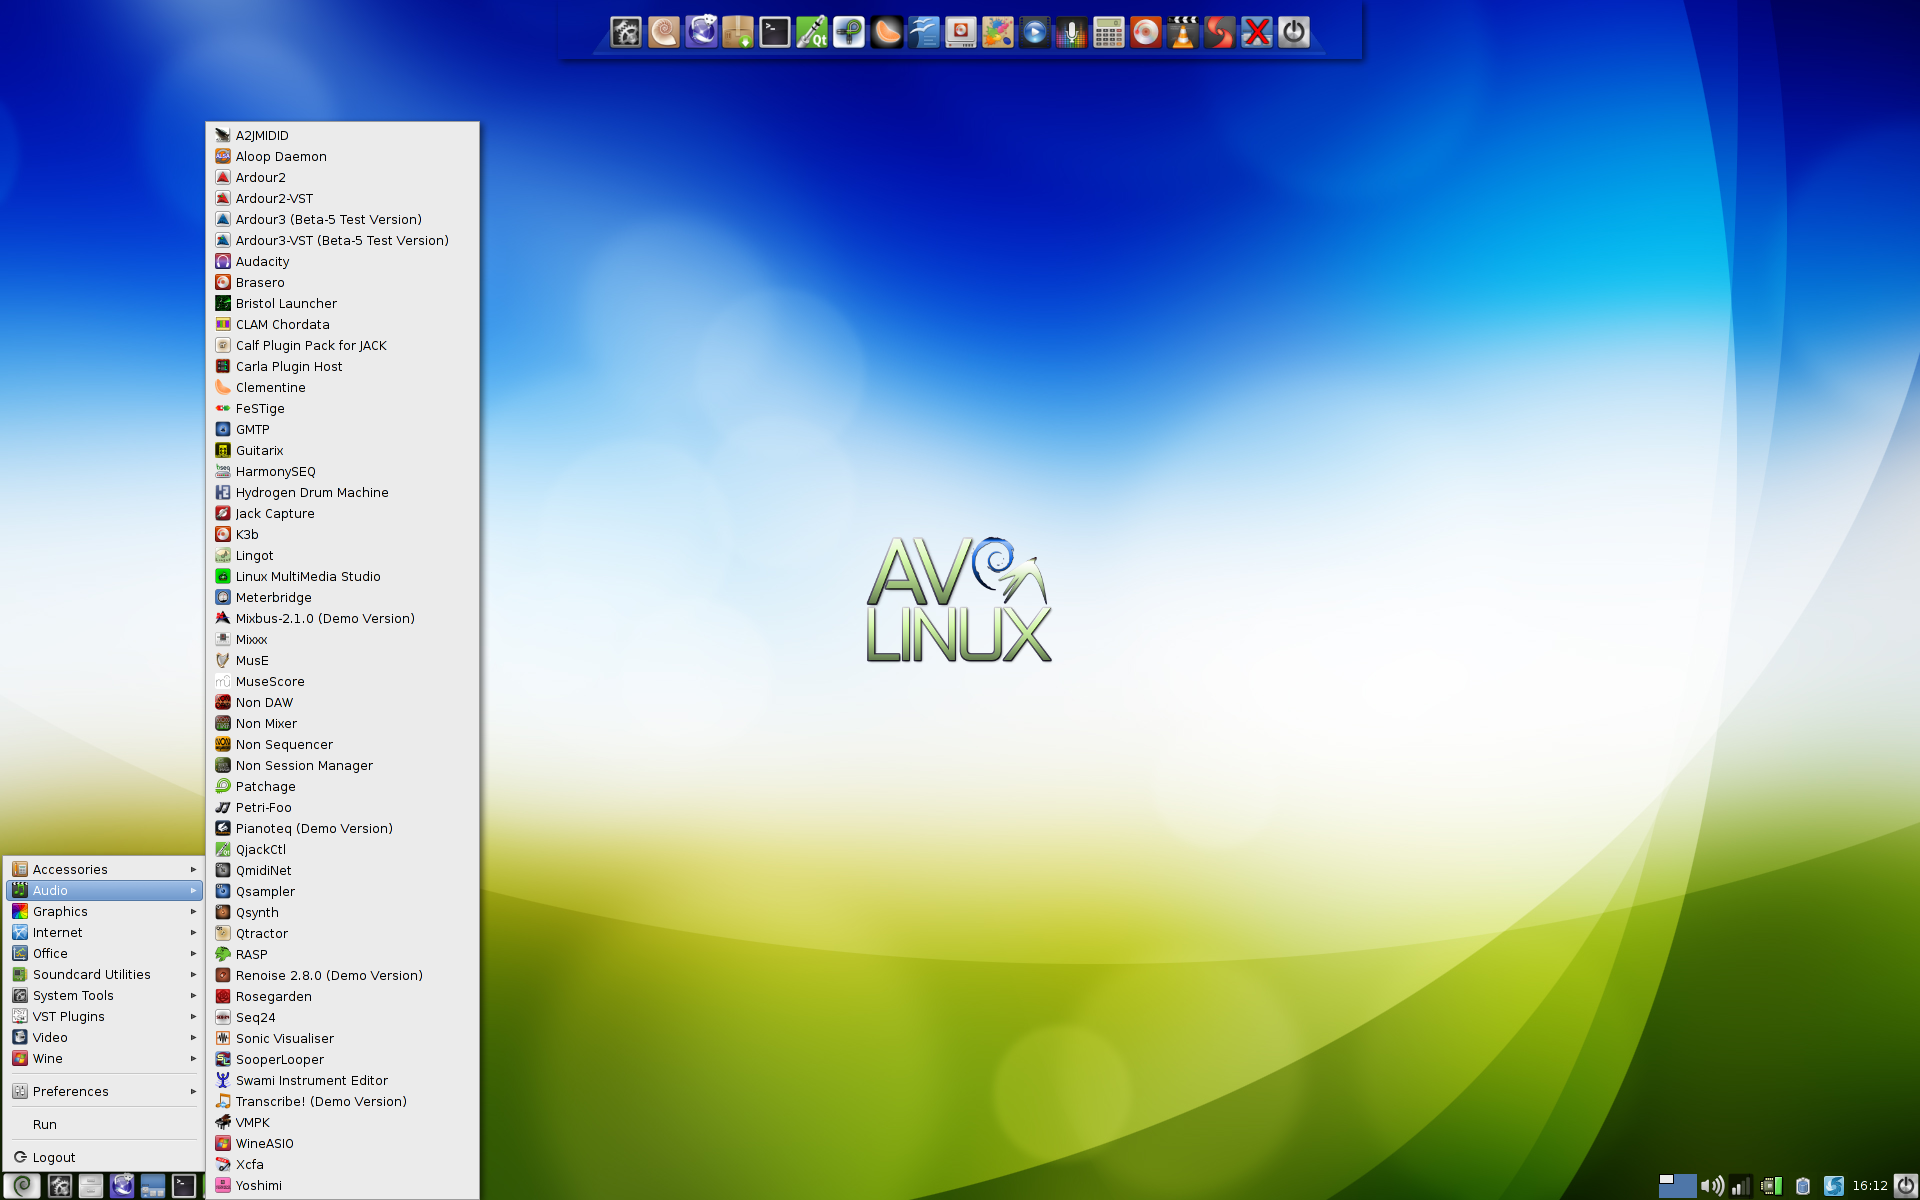 AV Linux 6 desktop